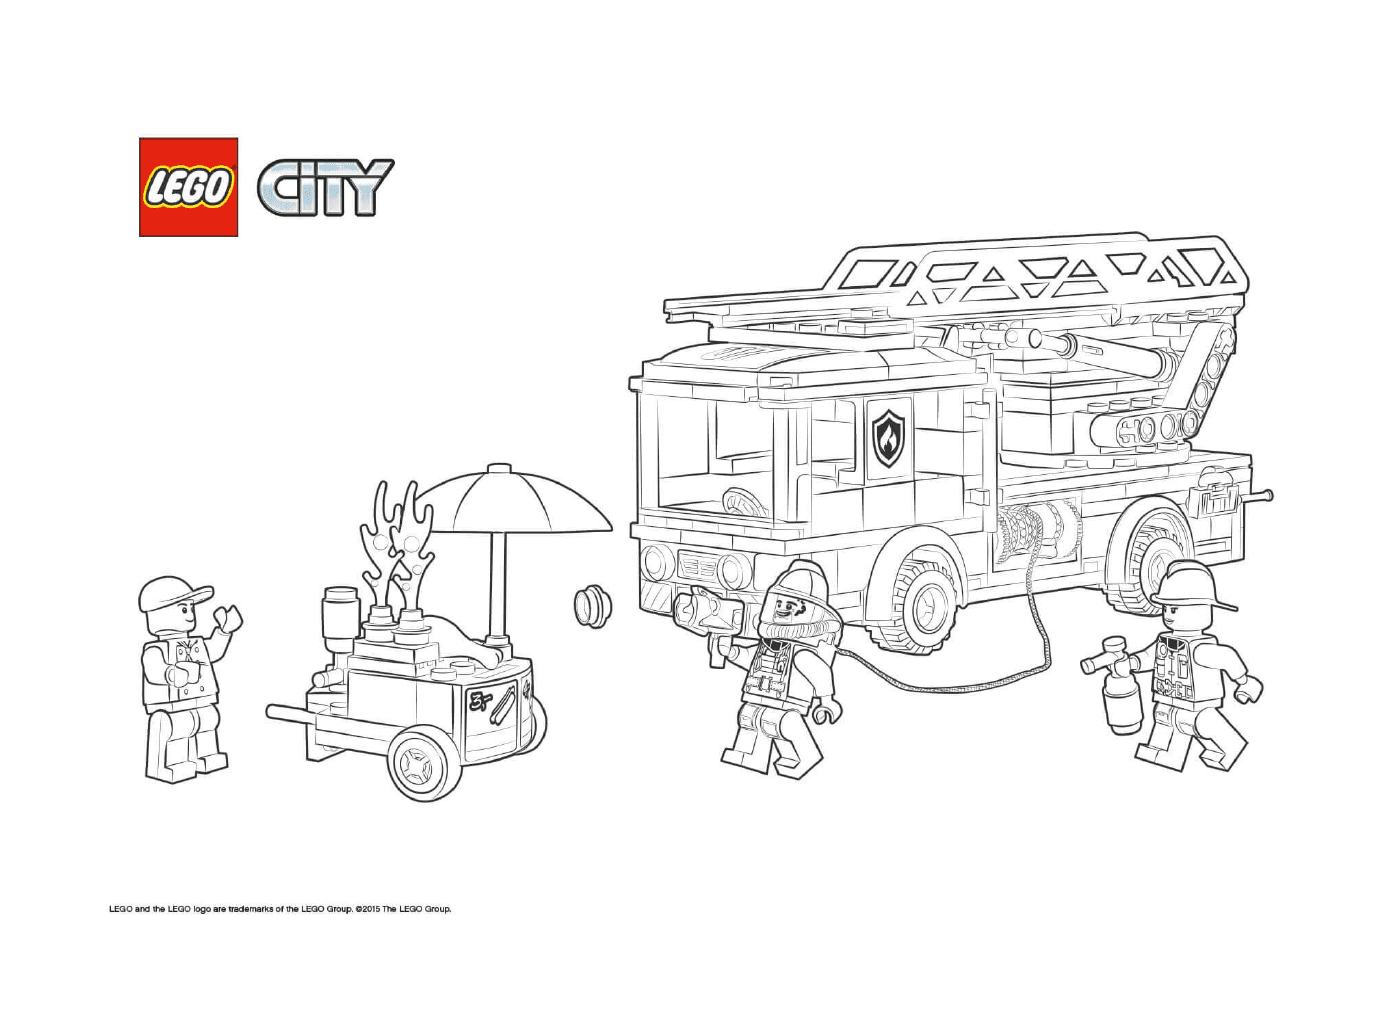  Feuerwehr der Stadt Lego 